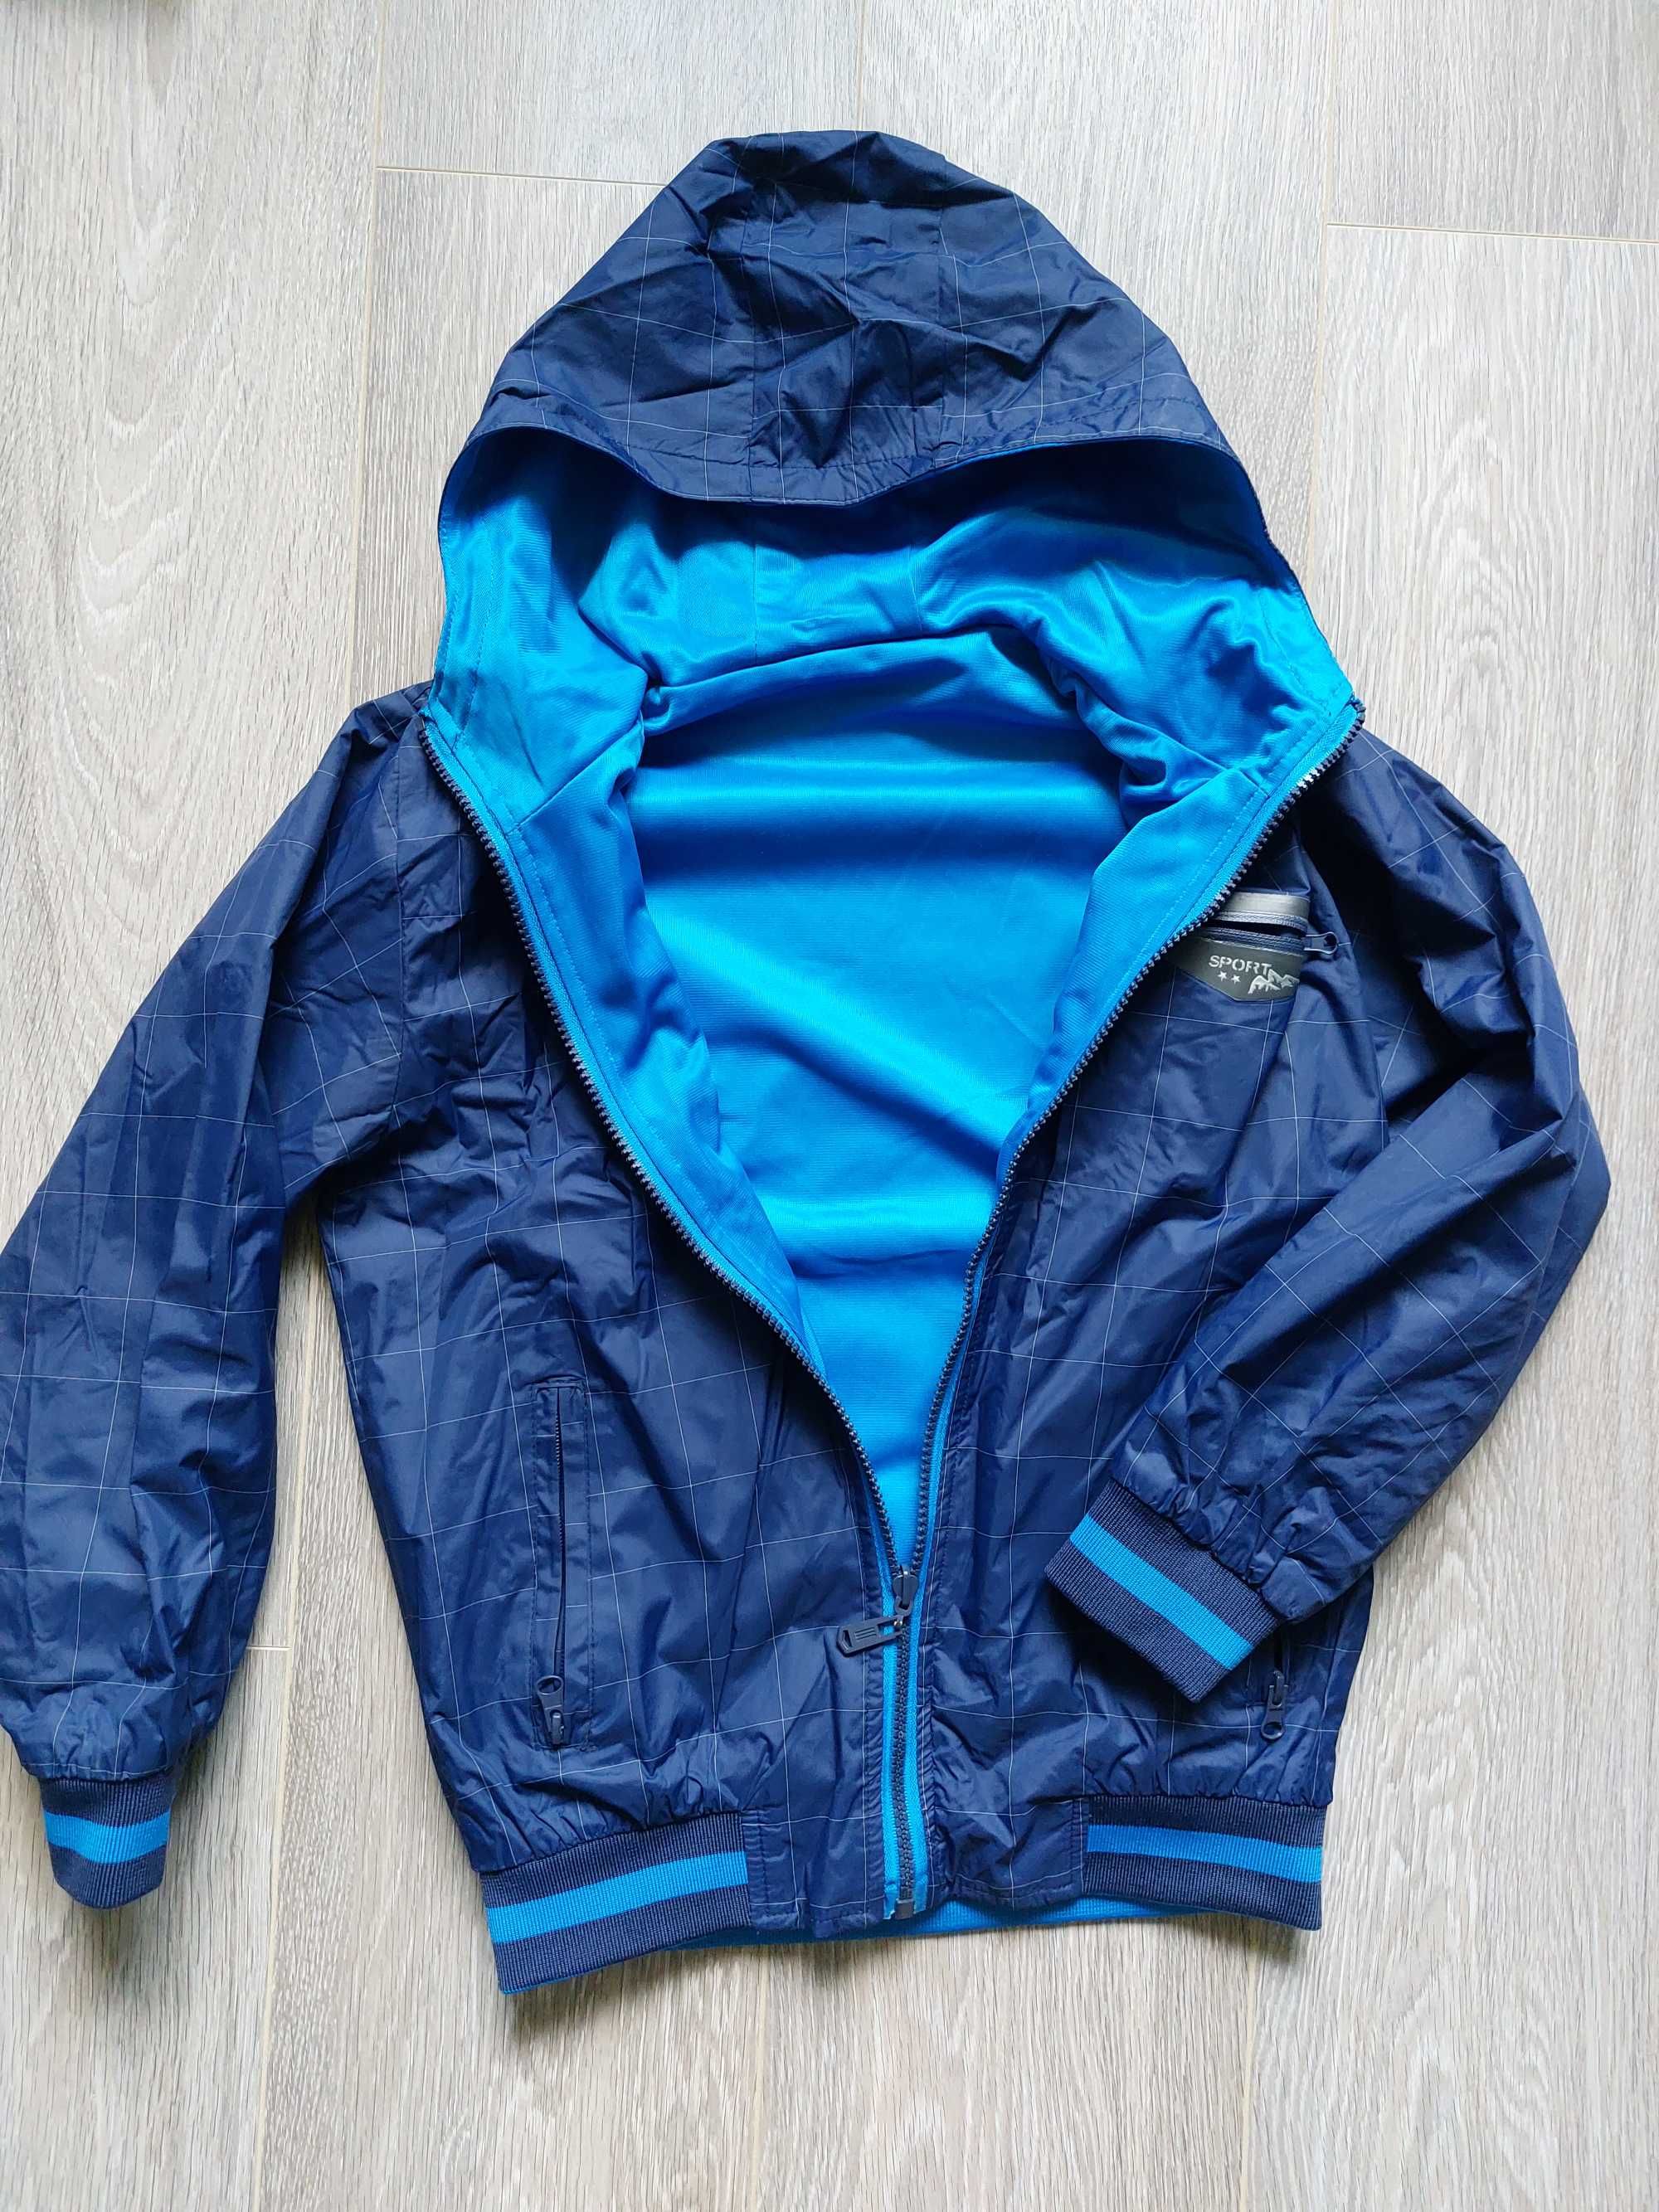 Демісезонна куртка - ветровка двохстороння,  для хлопчика 8-9 років